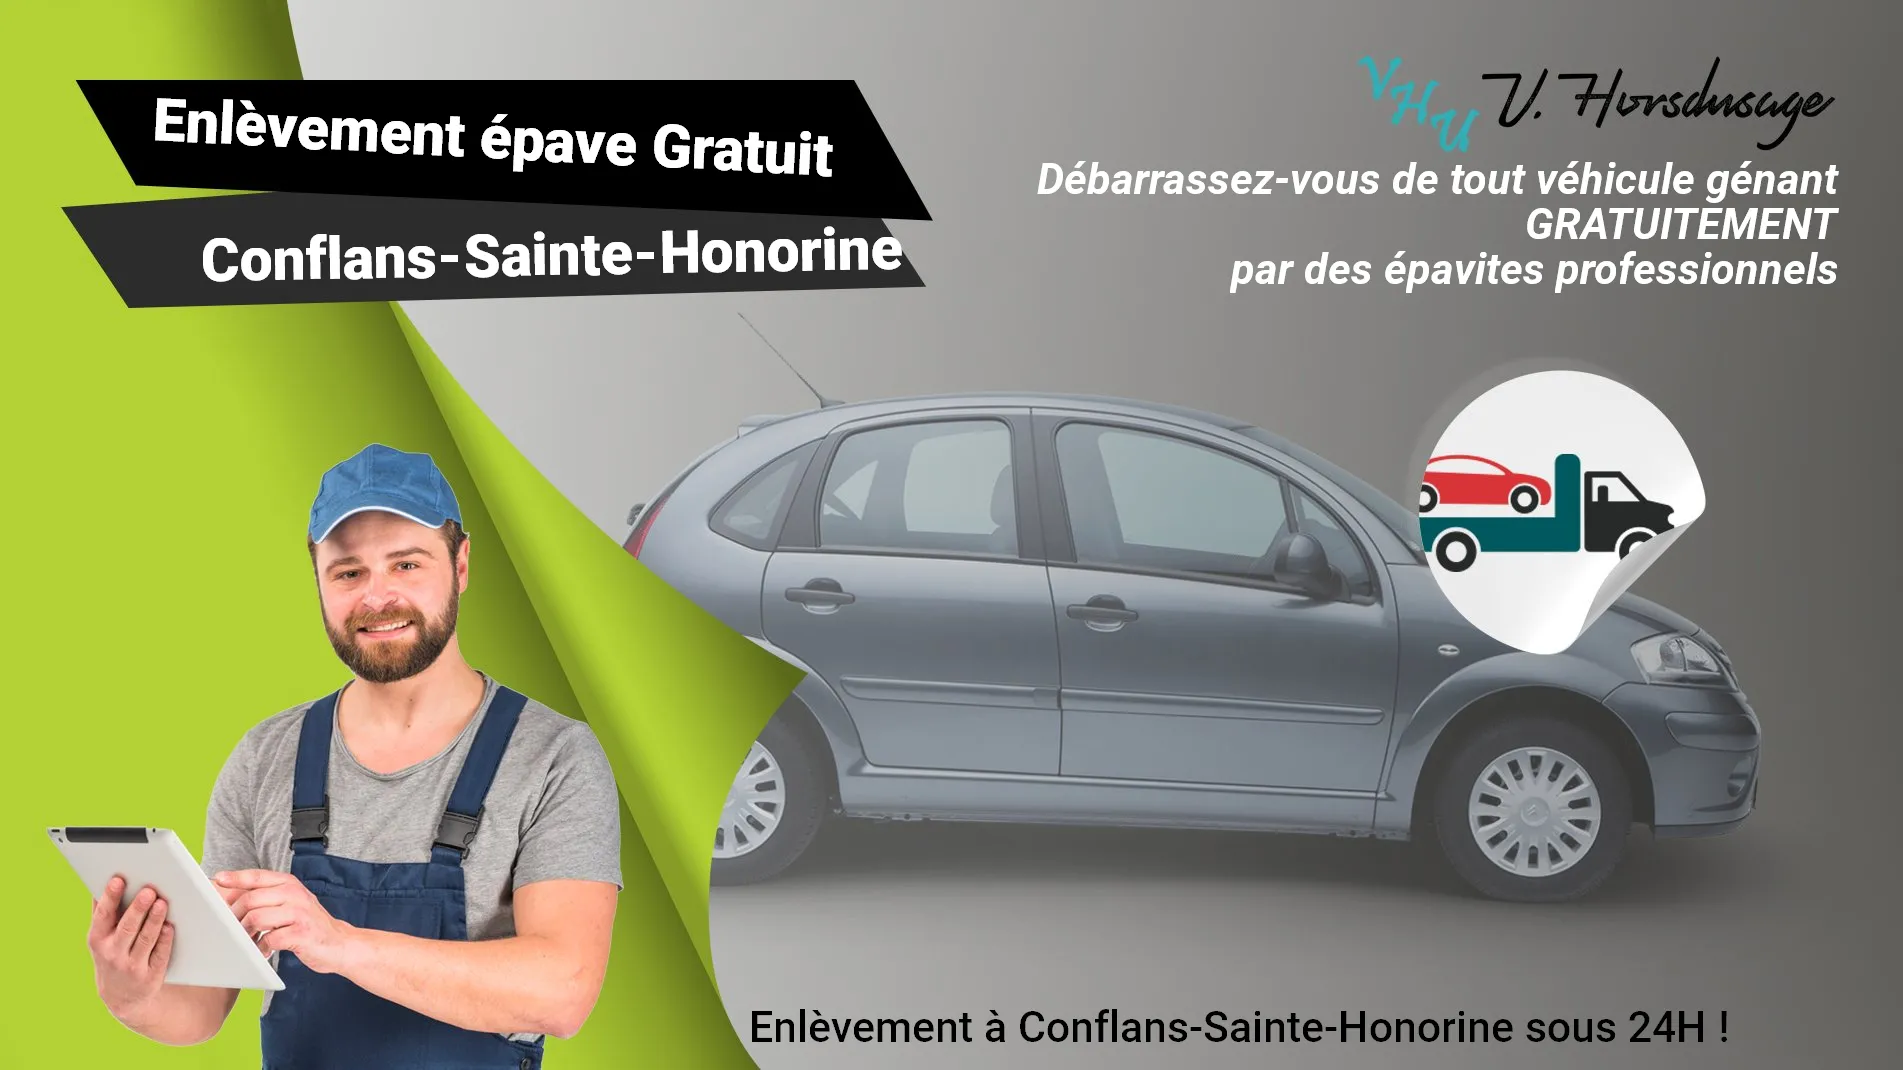 Pour un enlèvement gratuit à Conflans-Sainte-Honorine, contactez nos épavistes agréé VHU